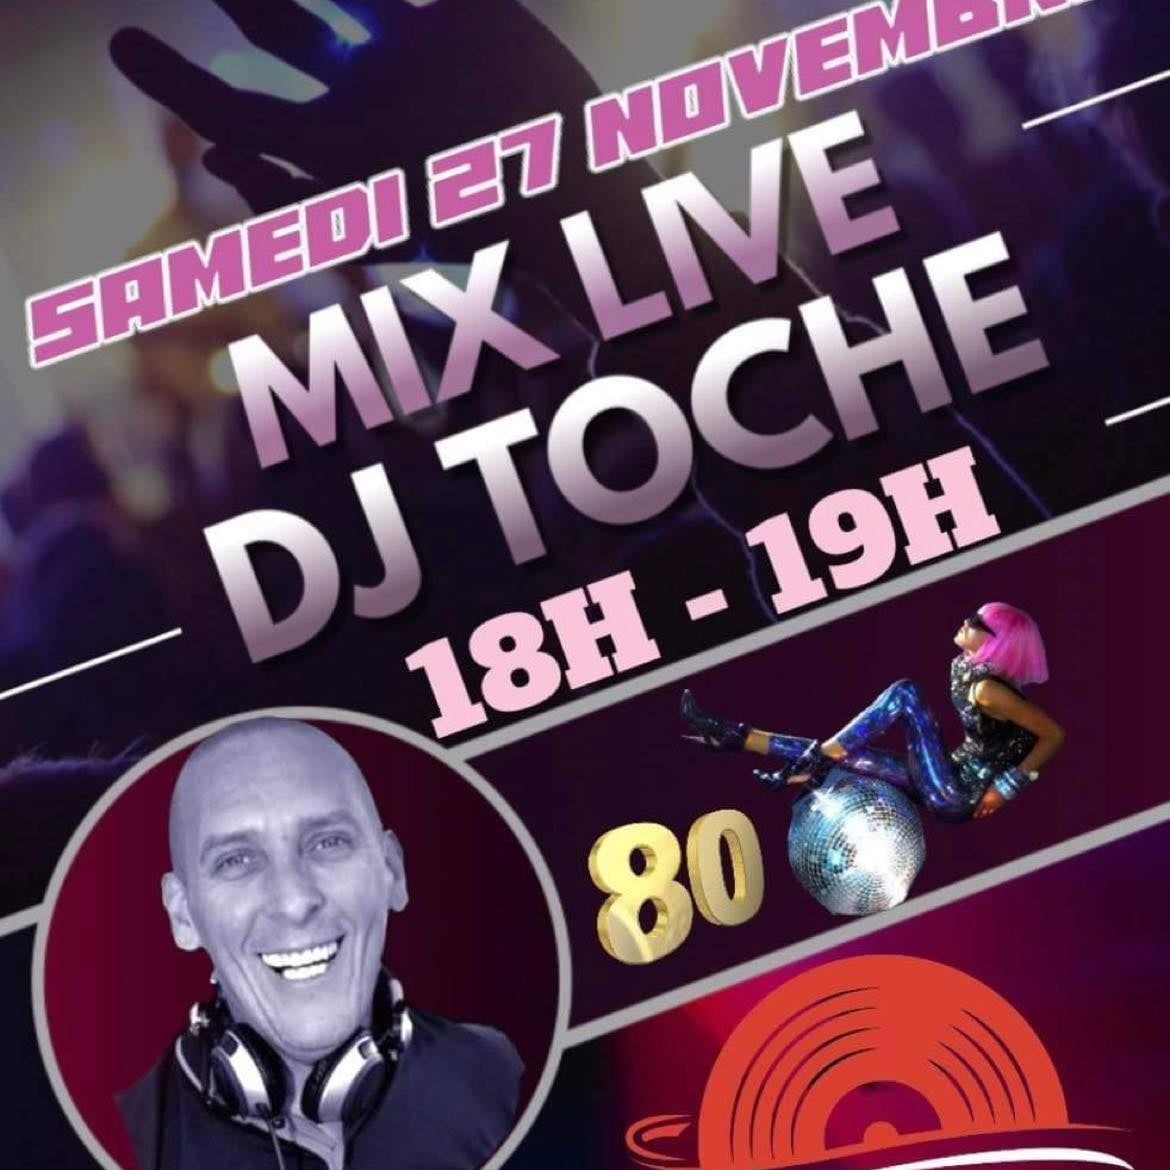 Download MADE IN 80 SAMEDI 27 NOVEMBRE 2021 DJ TOCHE